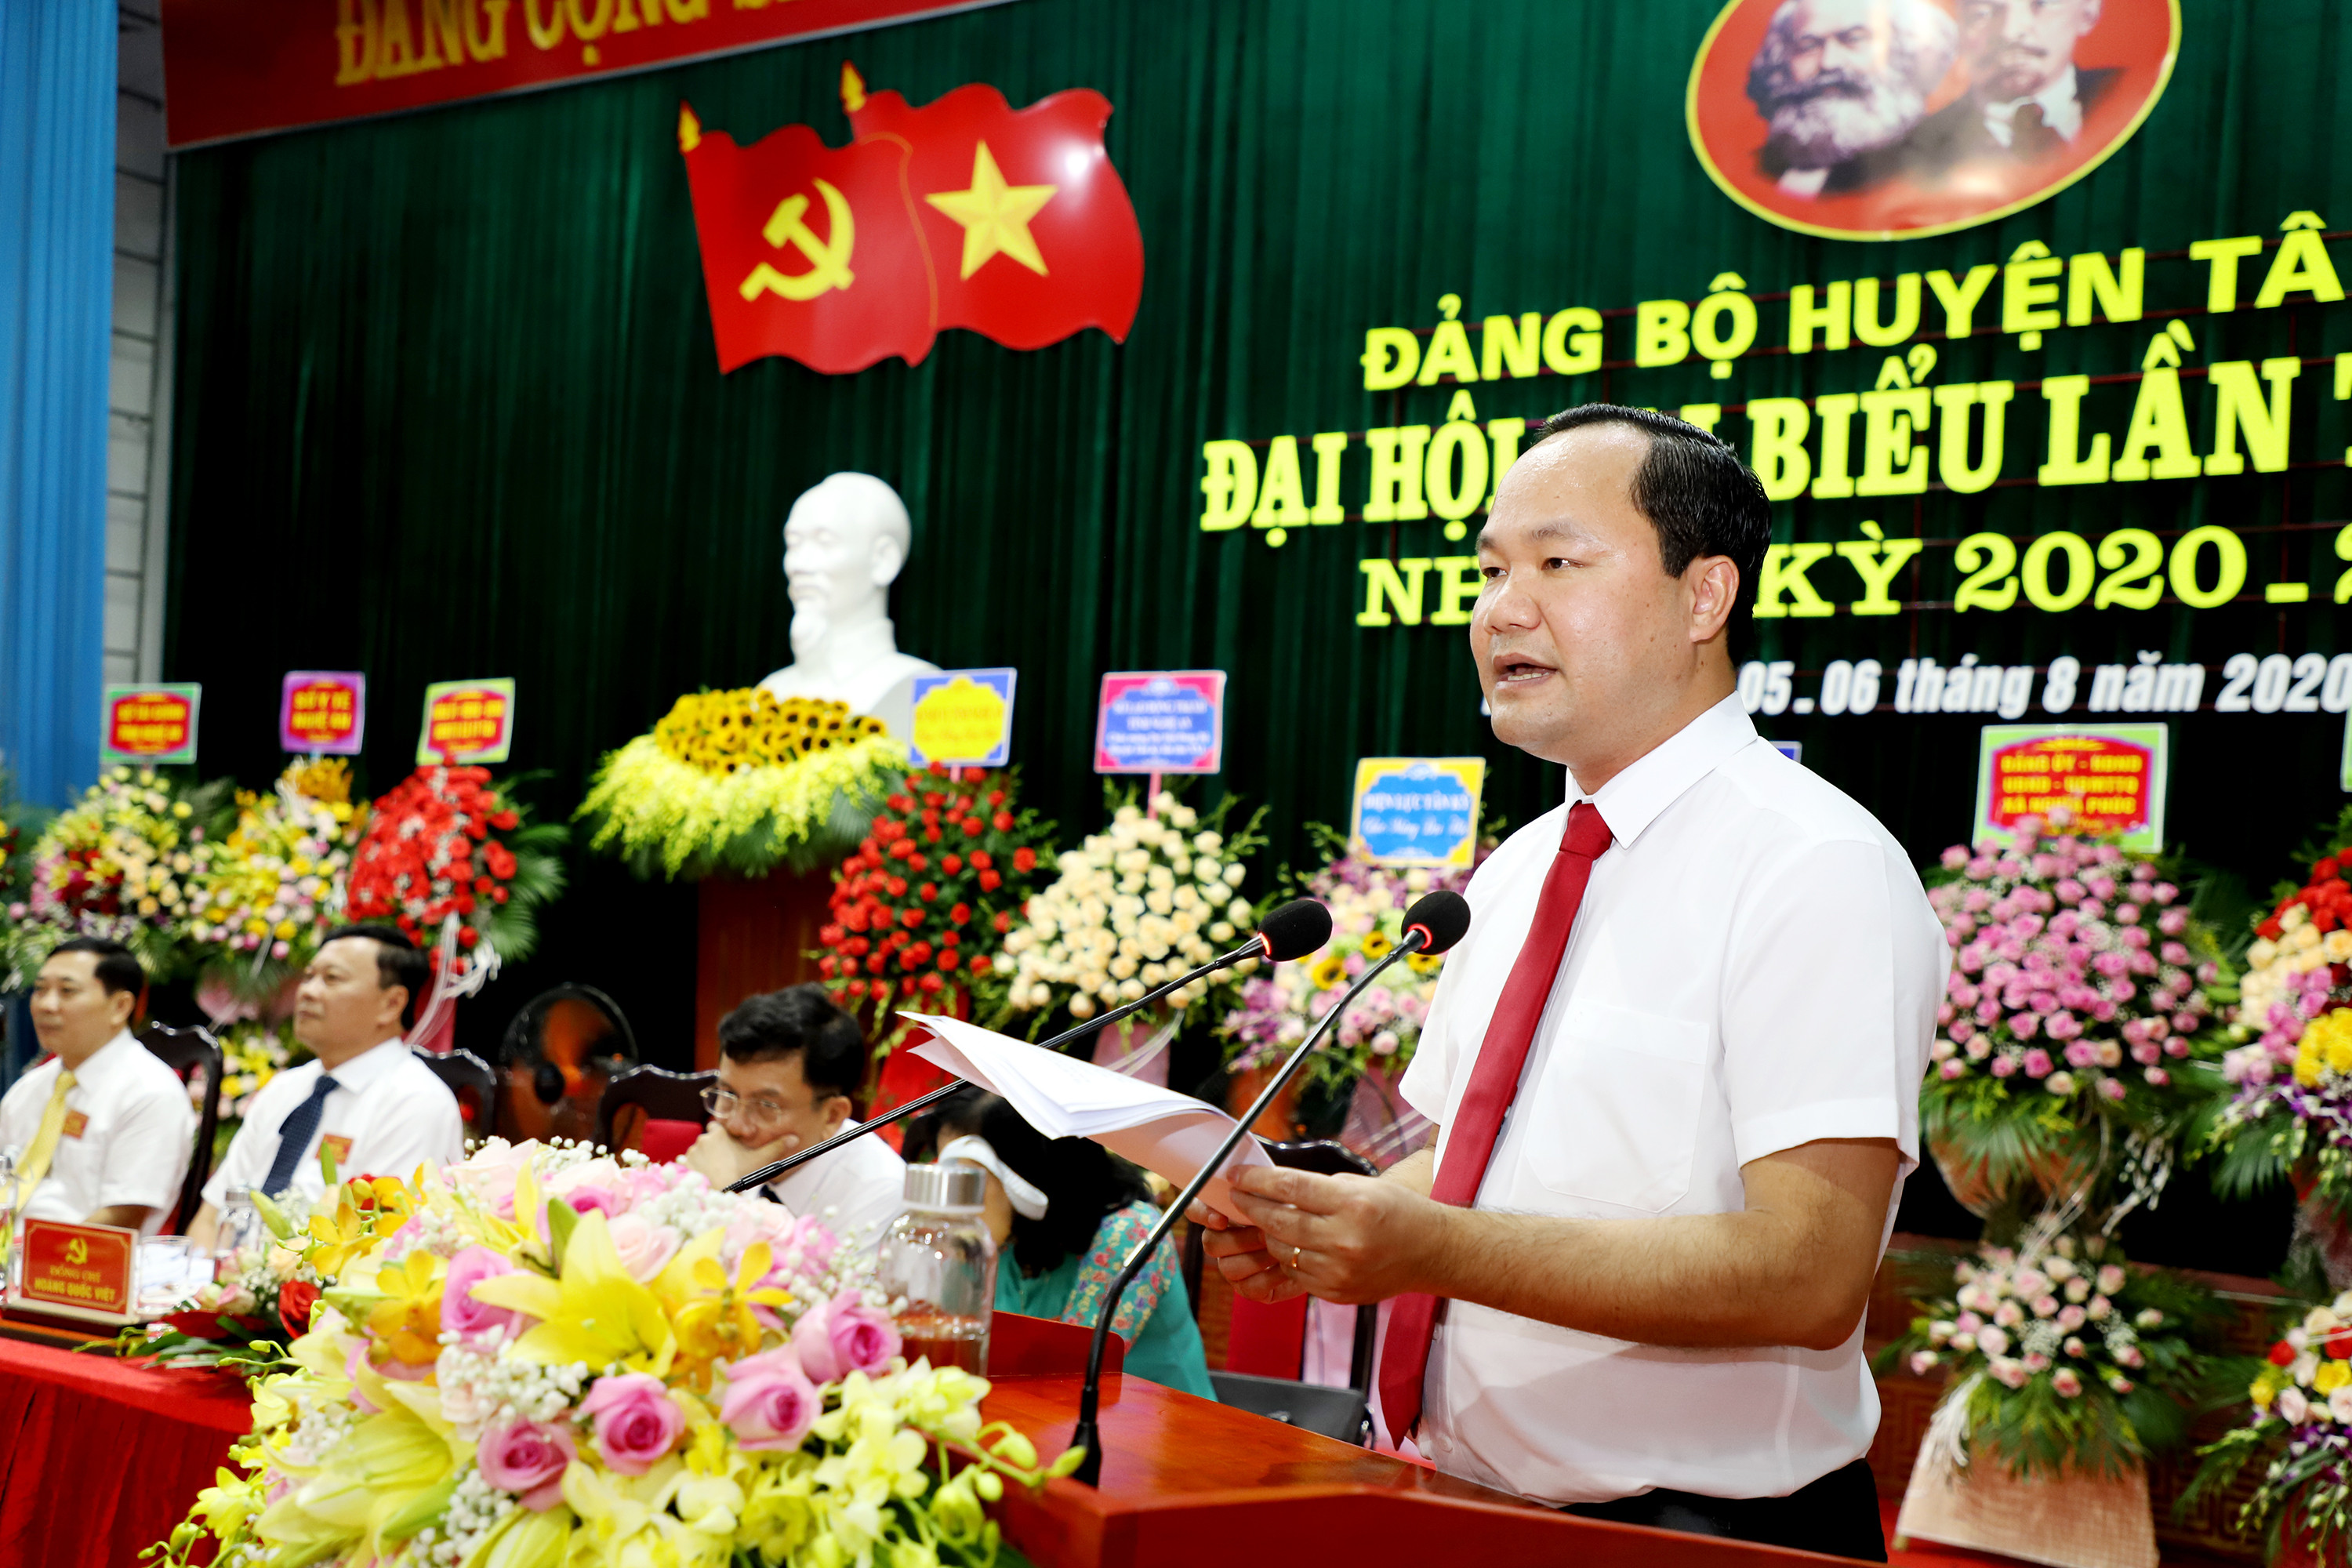 Đồng chí Hoàng Quốc Việt - Phó Bí thư Huyện ủy, Chủ tịch UBND huyện trình này. Ảnh: Phạm Bằng